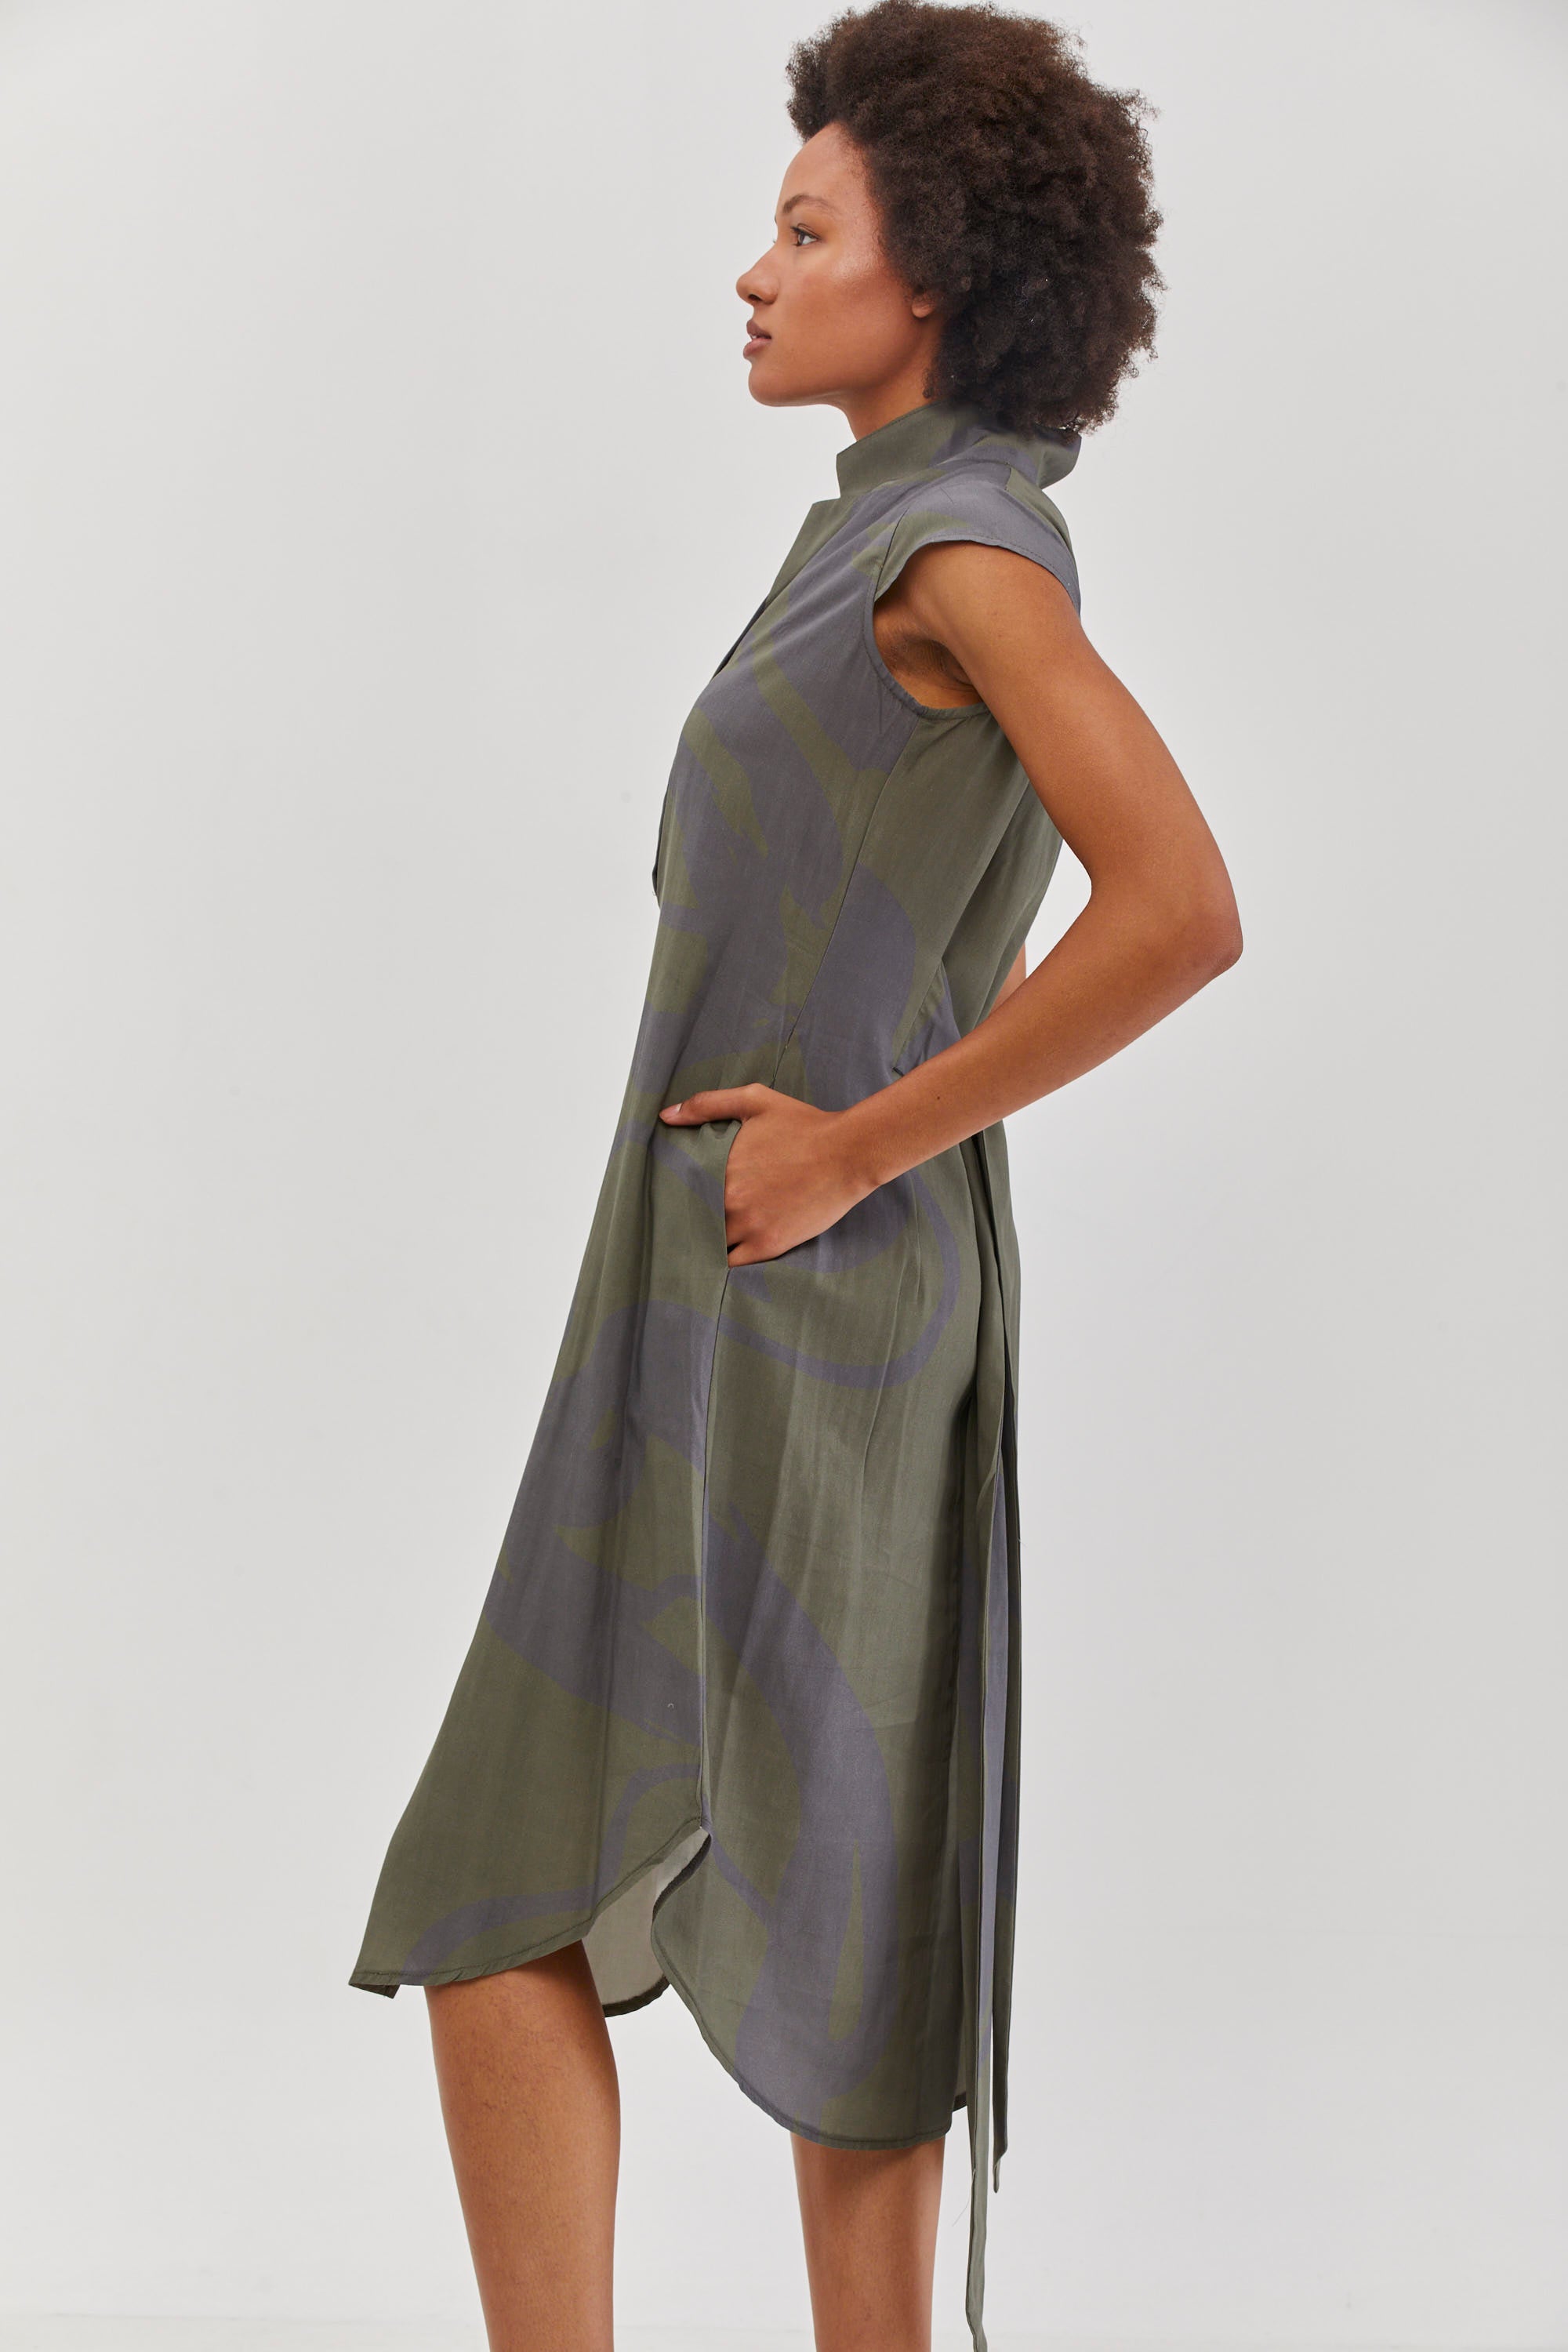 שמלת מירה הדפס ירוק מקורי של ענת